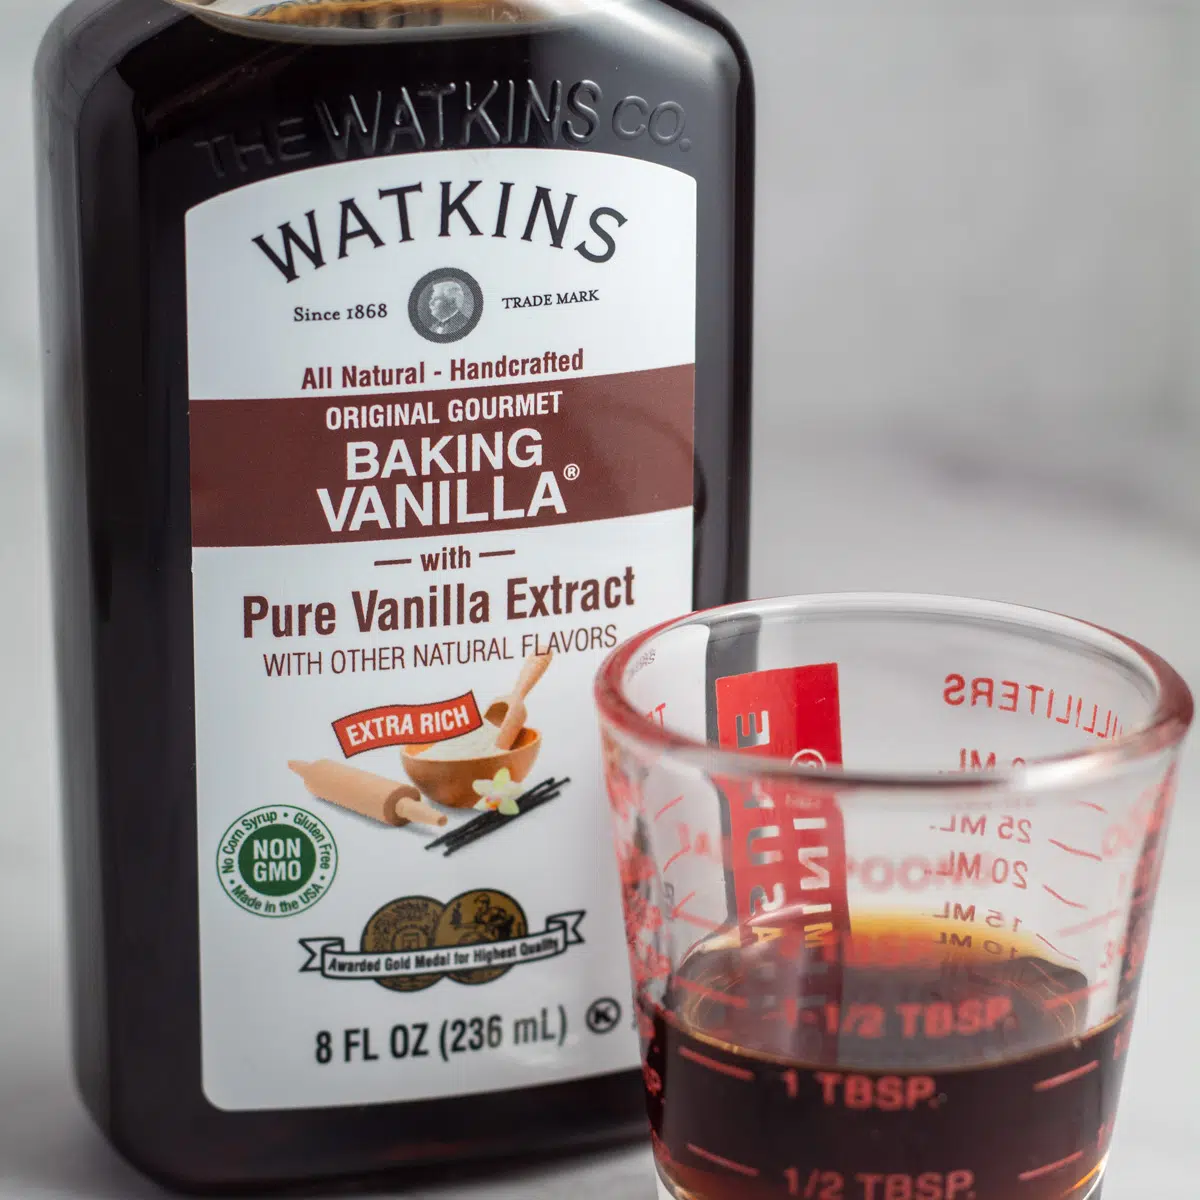 Варианти за заместител на екстракт от ванилия с бутилирана ванилия и порция в мерителна чаша.